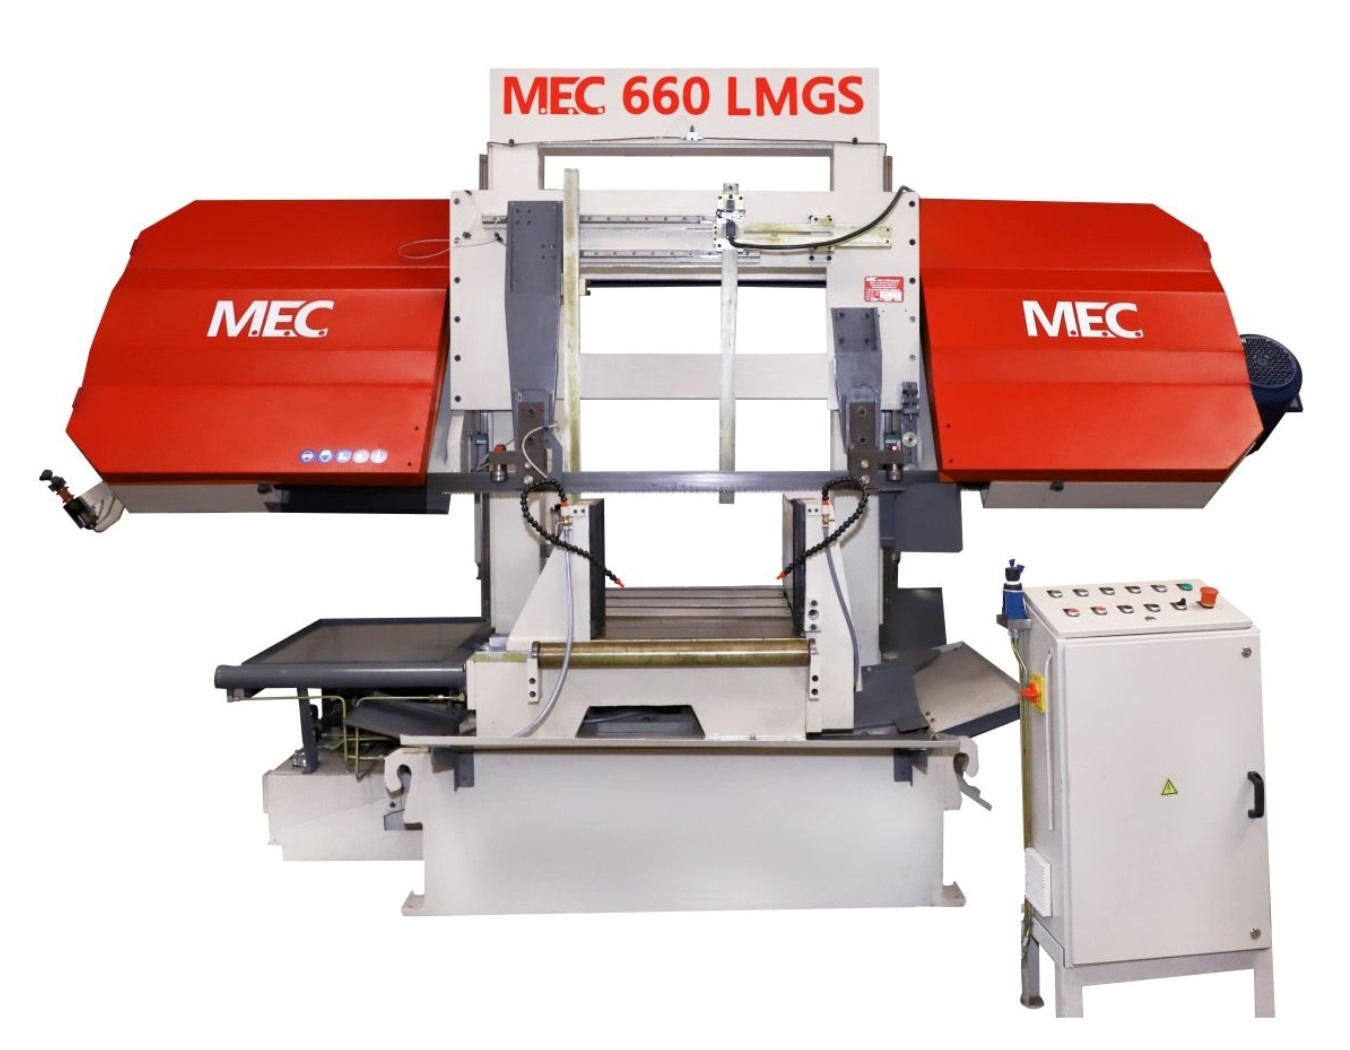 Semi Automatic Metal Cutting Saw - 660 LMGS